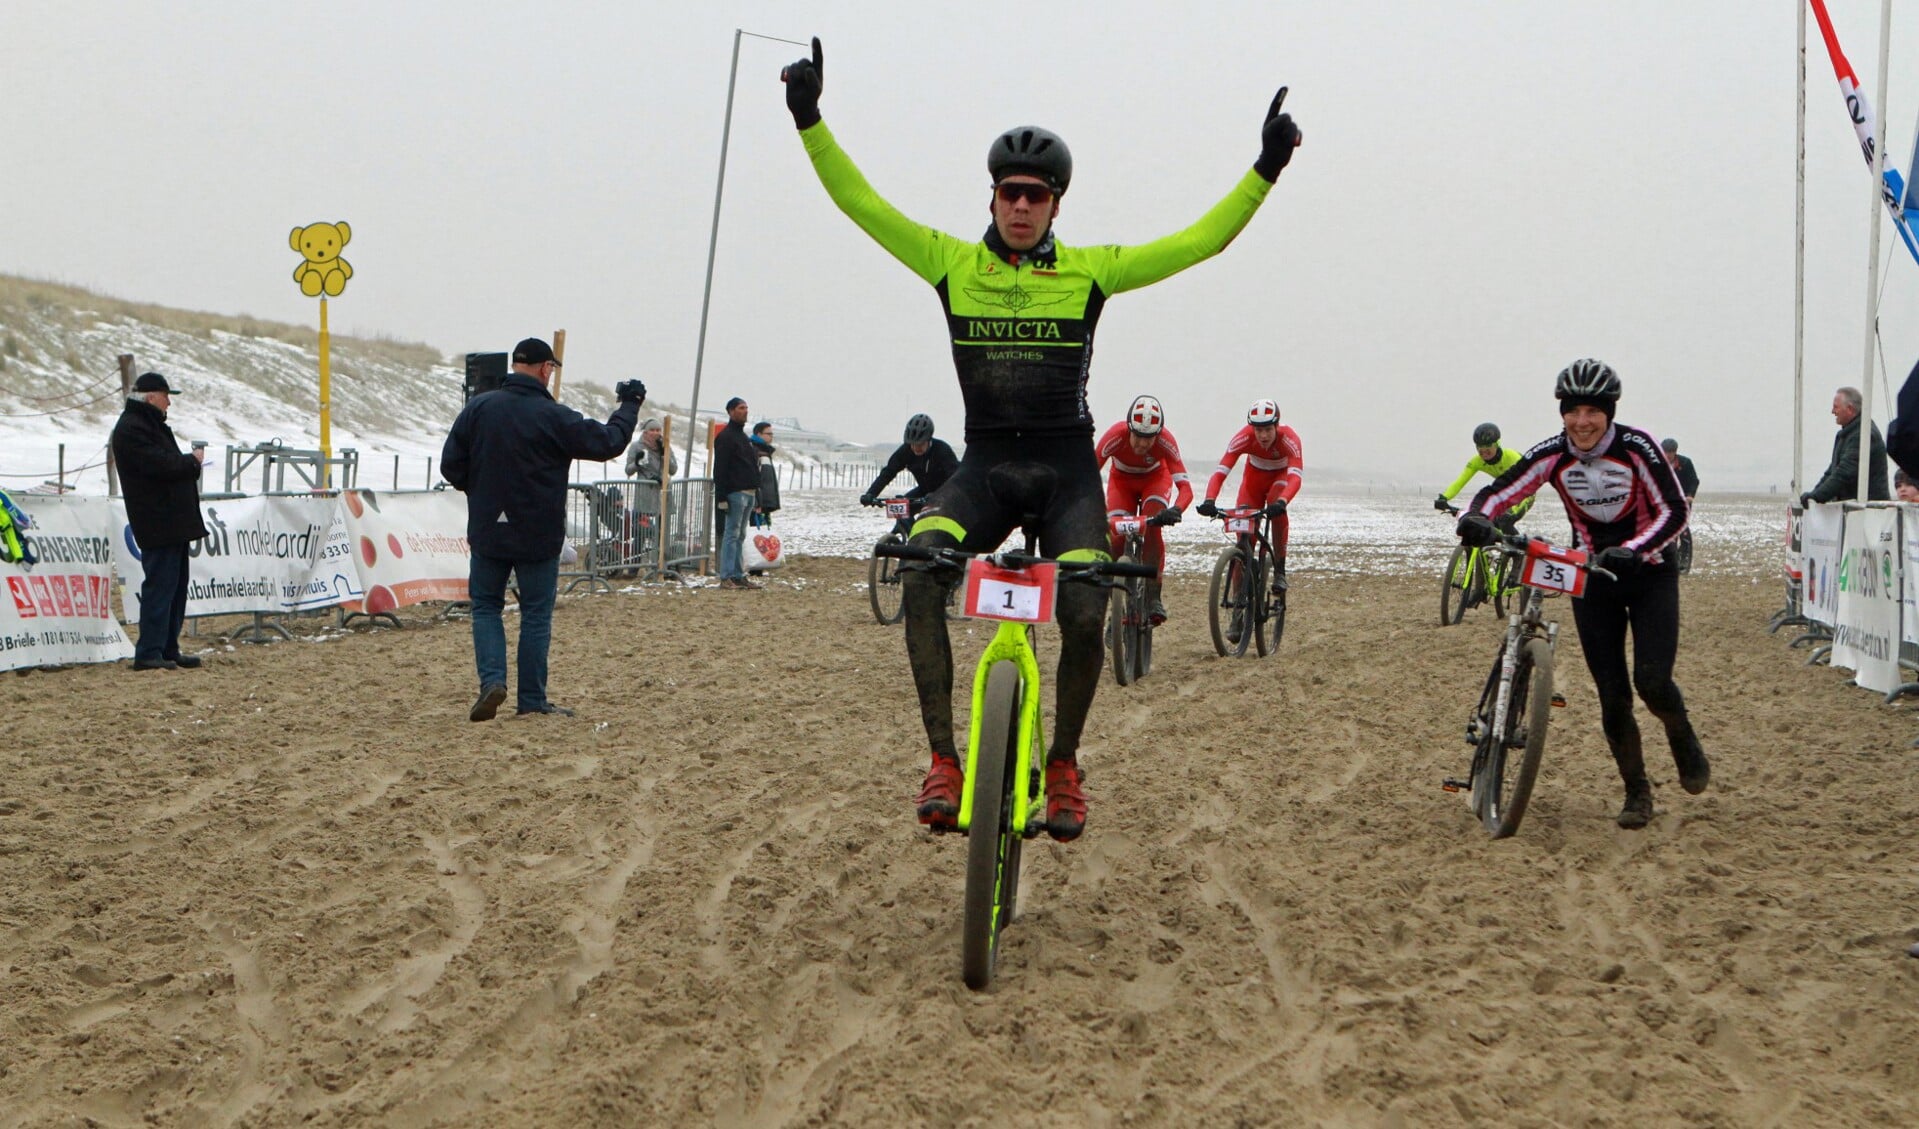 Ronan van Zandbeek troefde in de sprint zijn medevluchters af en prolongeerde zijn titel. * Foto: Wil van Balen.